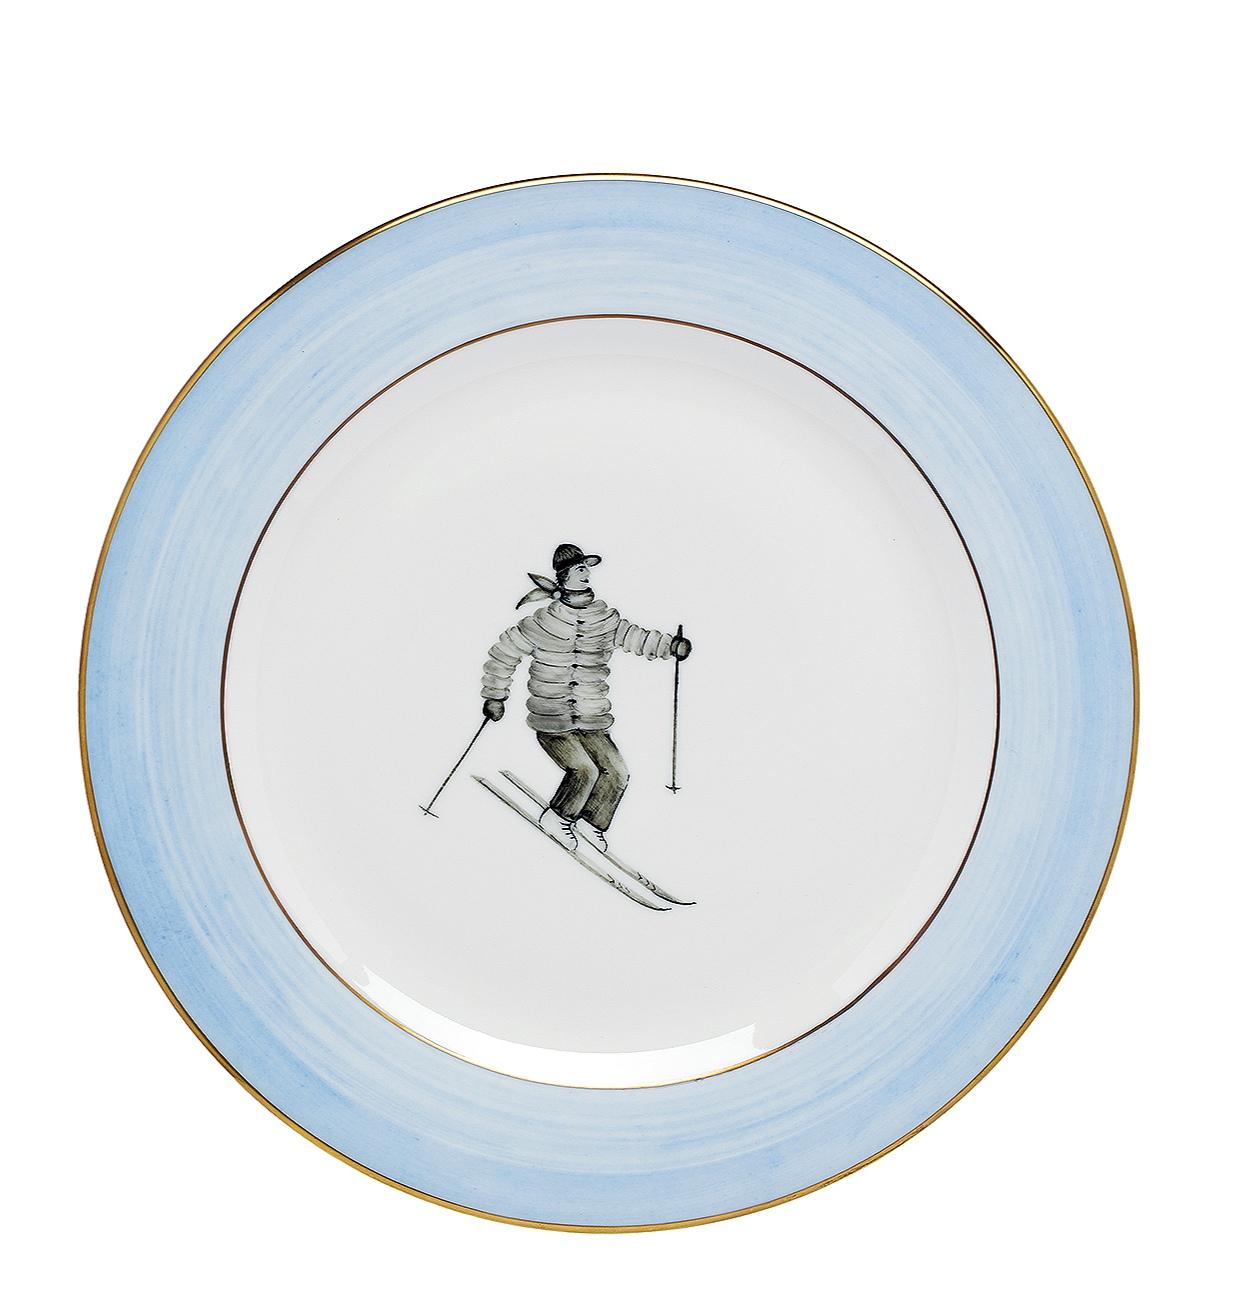 Ensemble de six assiettes à déjeuner en porcelaine sous glaçure, entièrement faites et peintes à la main. Le décor montre un décor de skieur peint en style country avec une ligne mains libres bleue et cerclée de platine. Une assiette plate et une